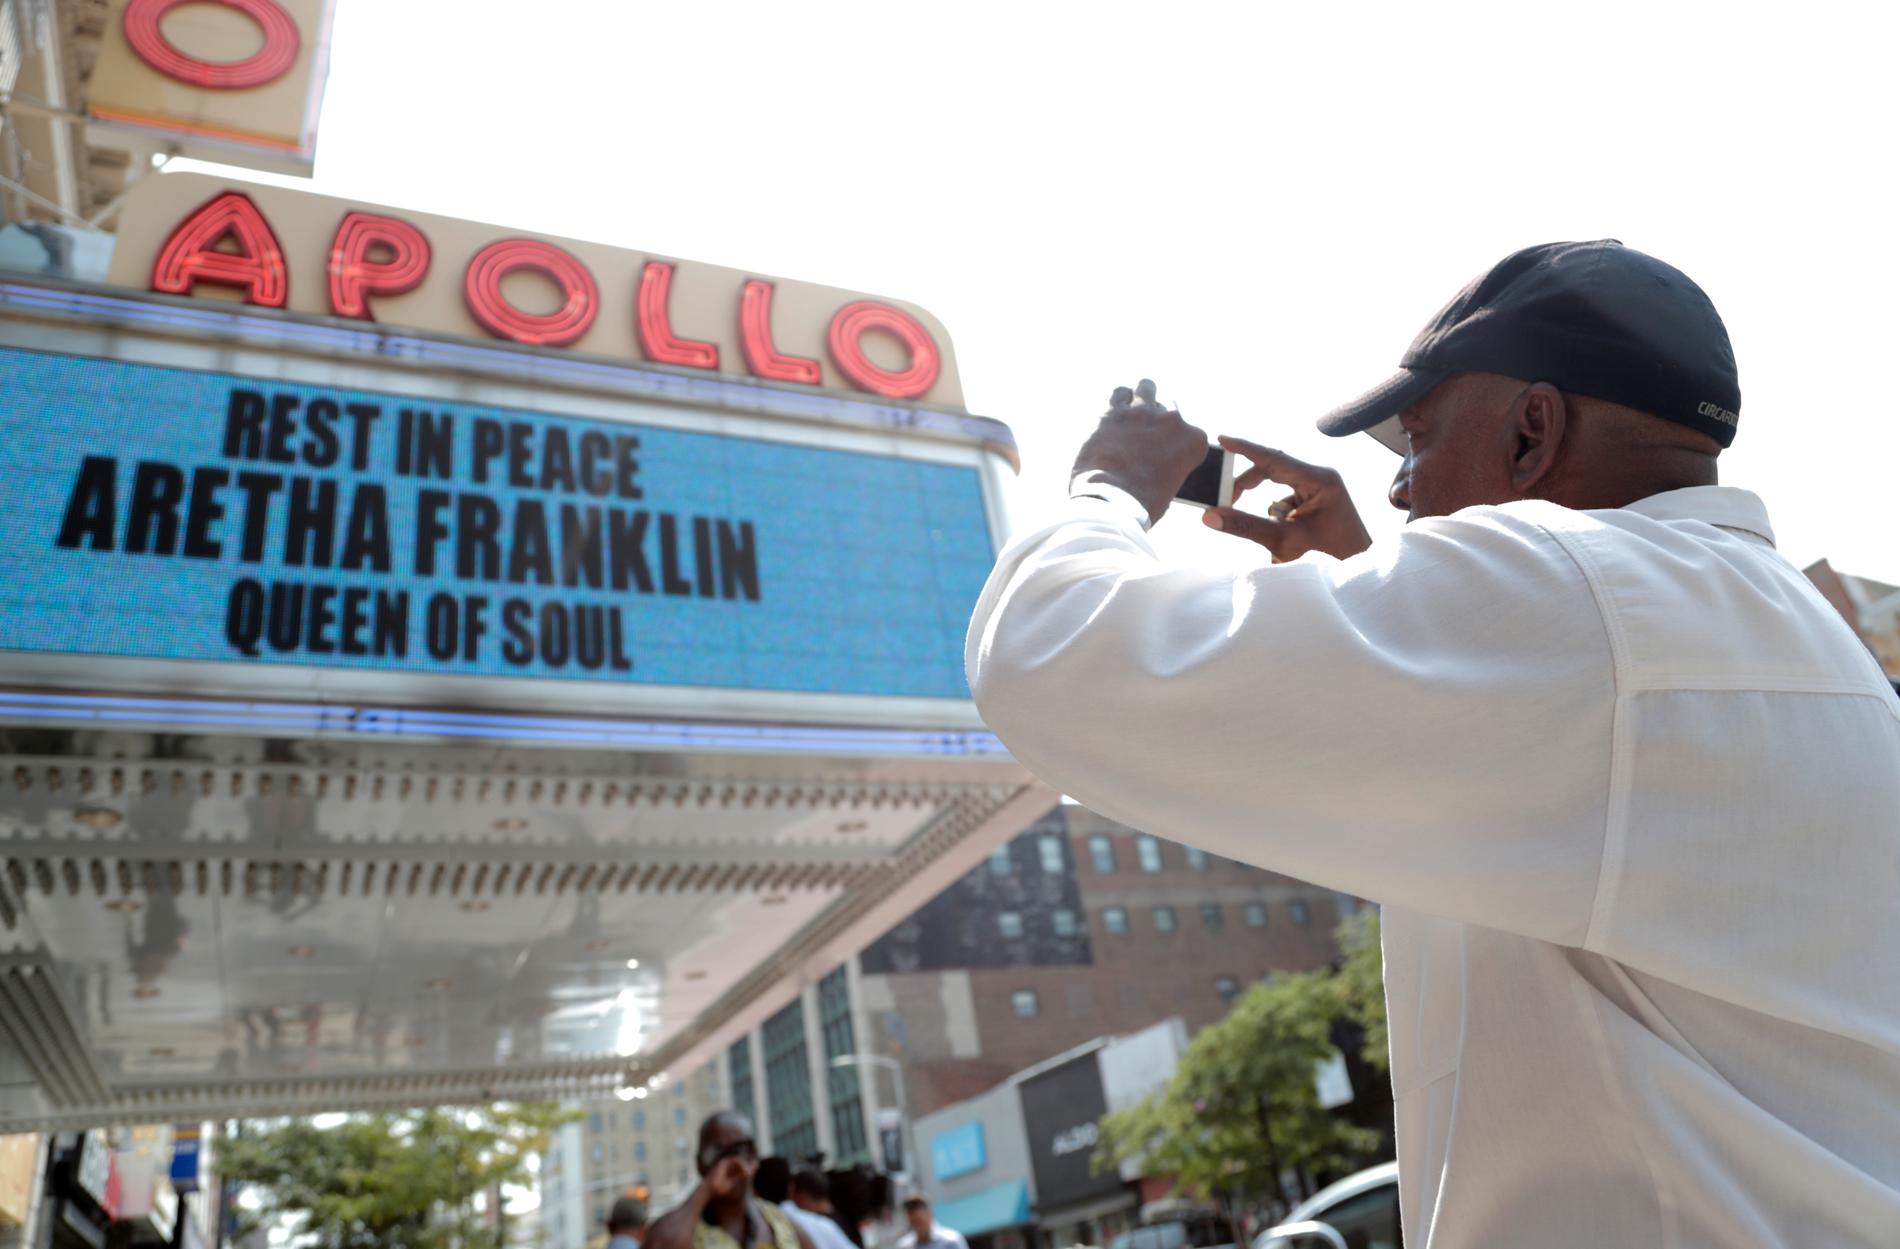 Apollo Theater i New York var snabbt uppe med en hyllningsskylt till Aretha Franklin.